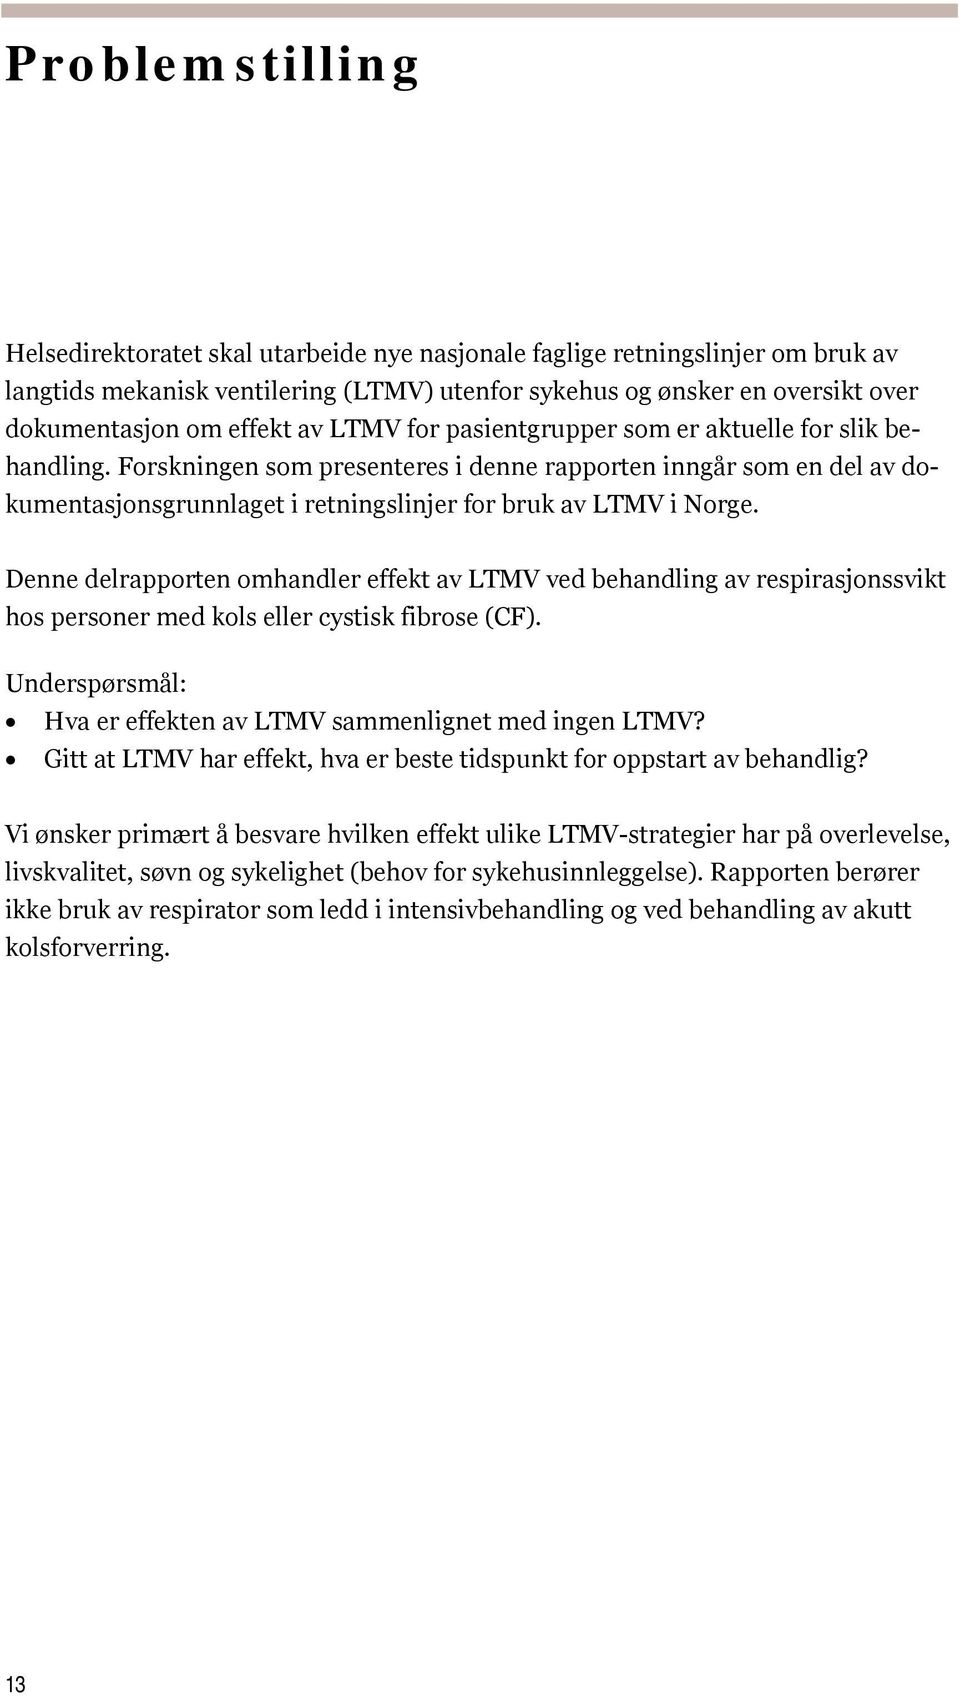 Forskningen som presenteres i denne rapporten inngår som en del av dokumentasjonsgrunnlaget i retningslinjer for bruk av LTMV i Norge.